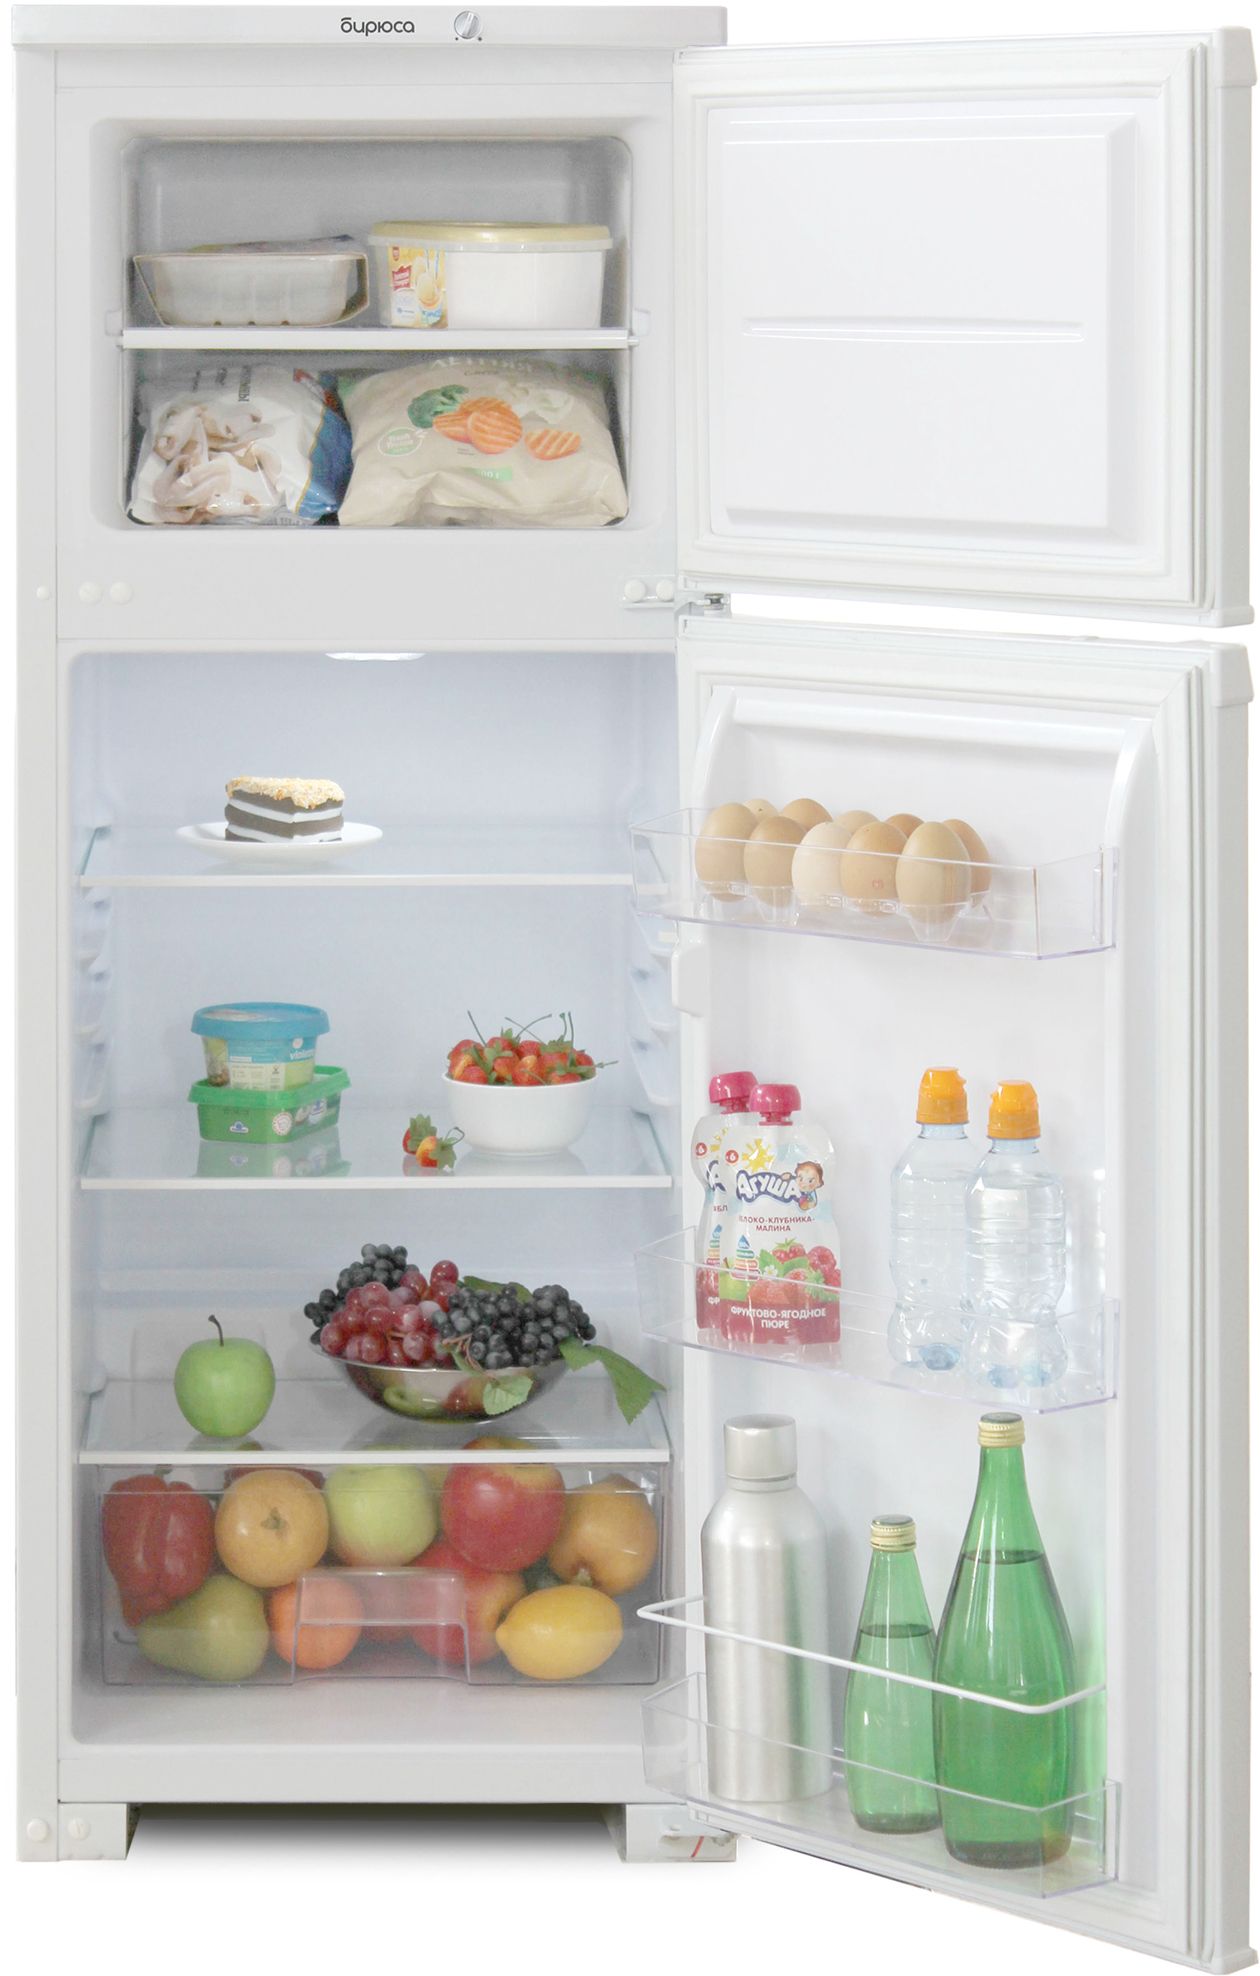 холодильник бирюса 122, купить в Красноярске холодильник бирюса 122,  купить в Красноярске дешево холодильник бирюса 122, купить в Красноярске минимальной цене холодильник бирюса 122